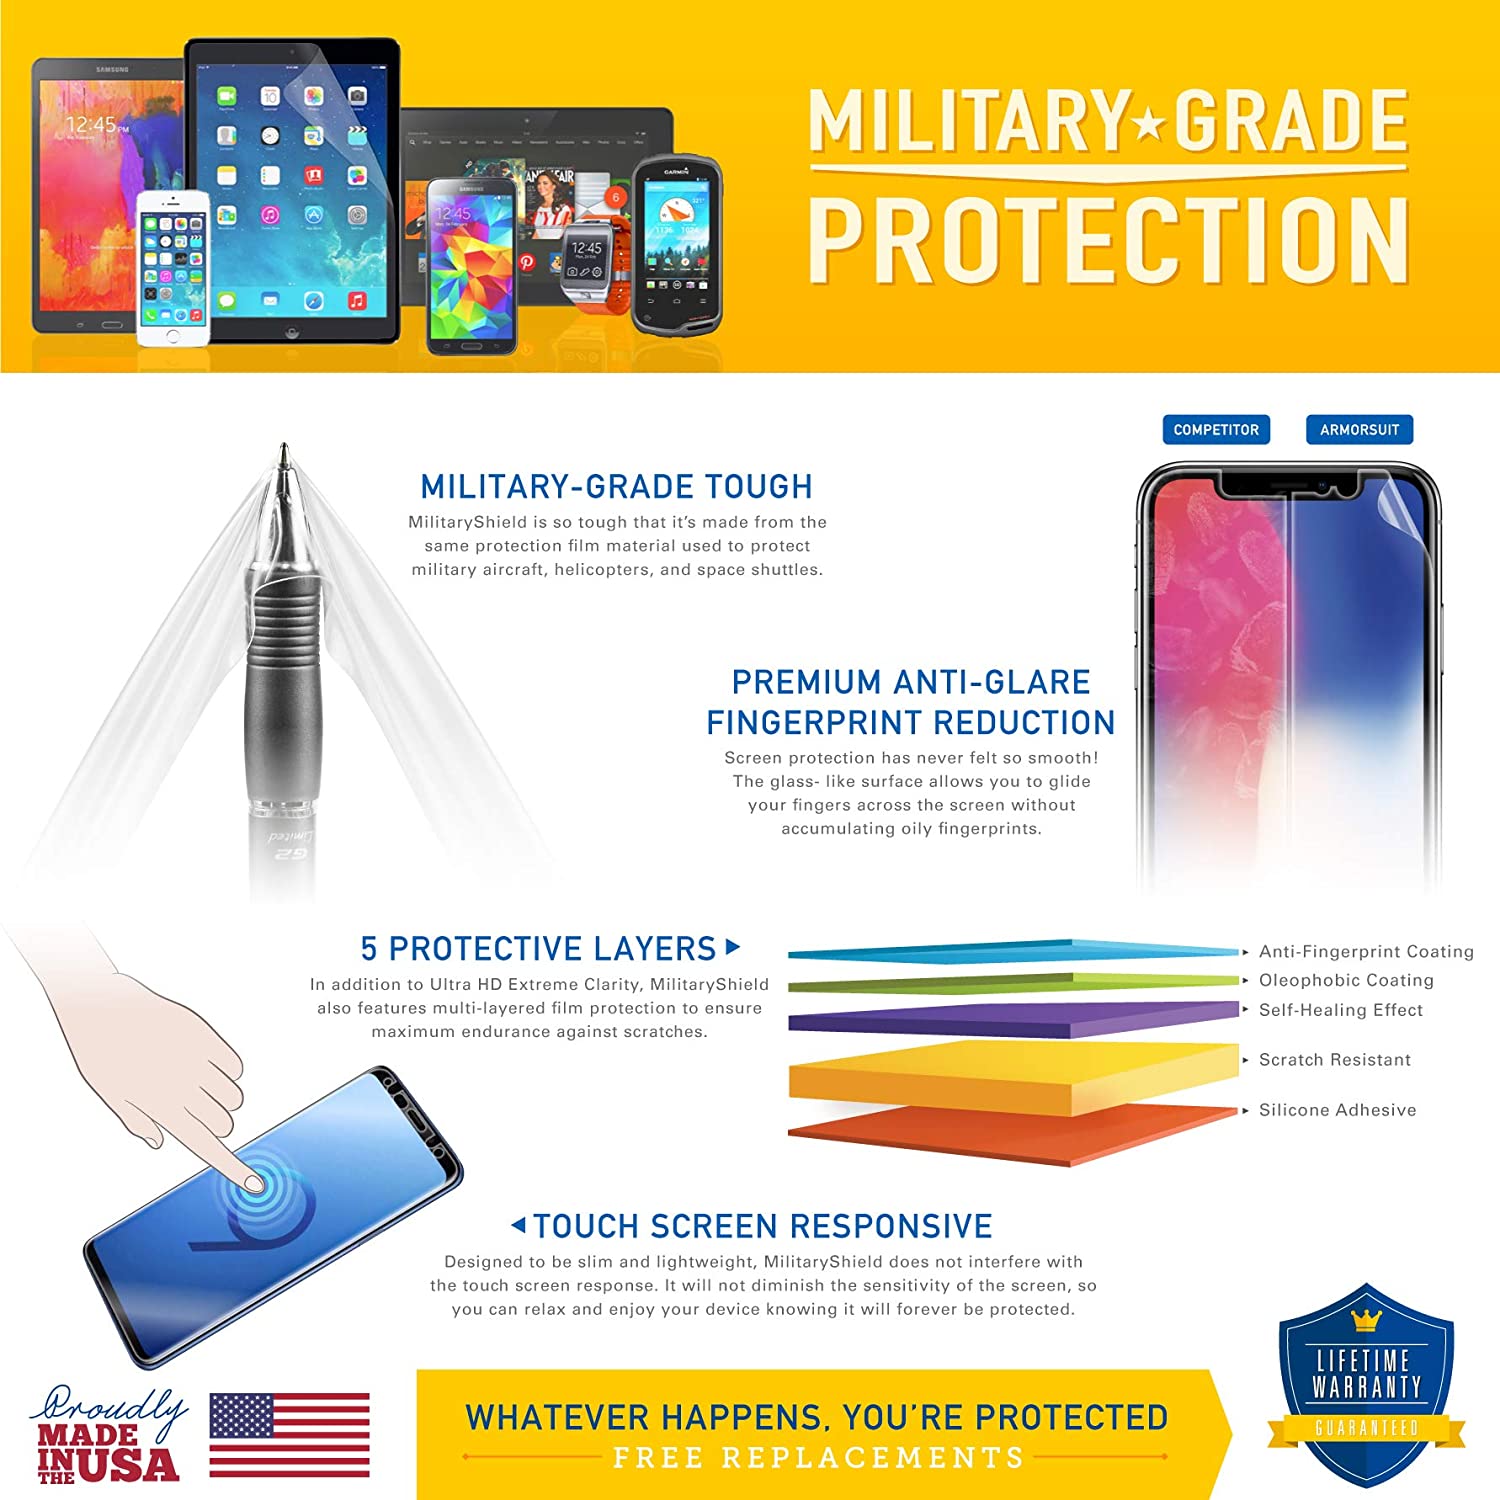 Samsung Galaxy Tab 10.1 Full Body Skin Protector